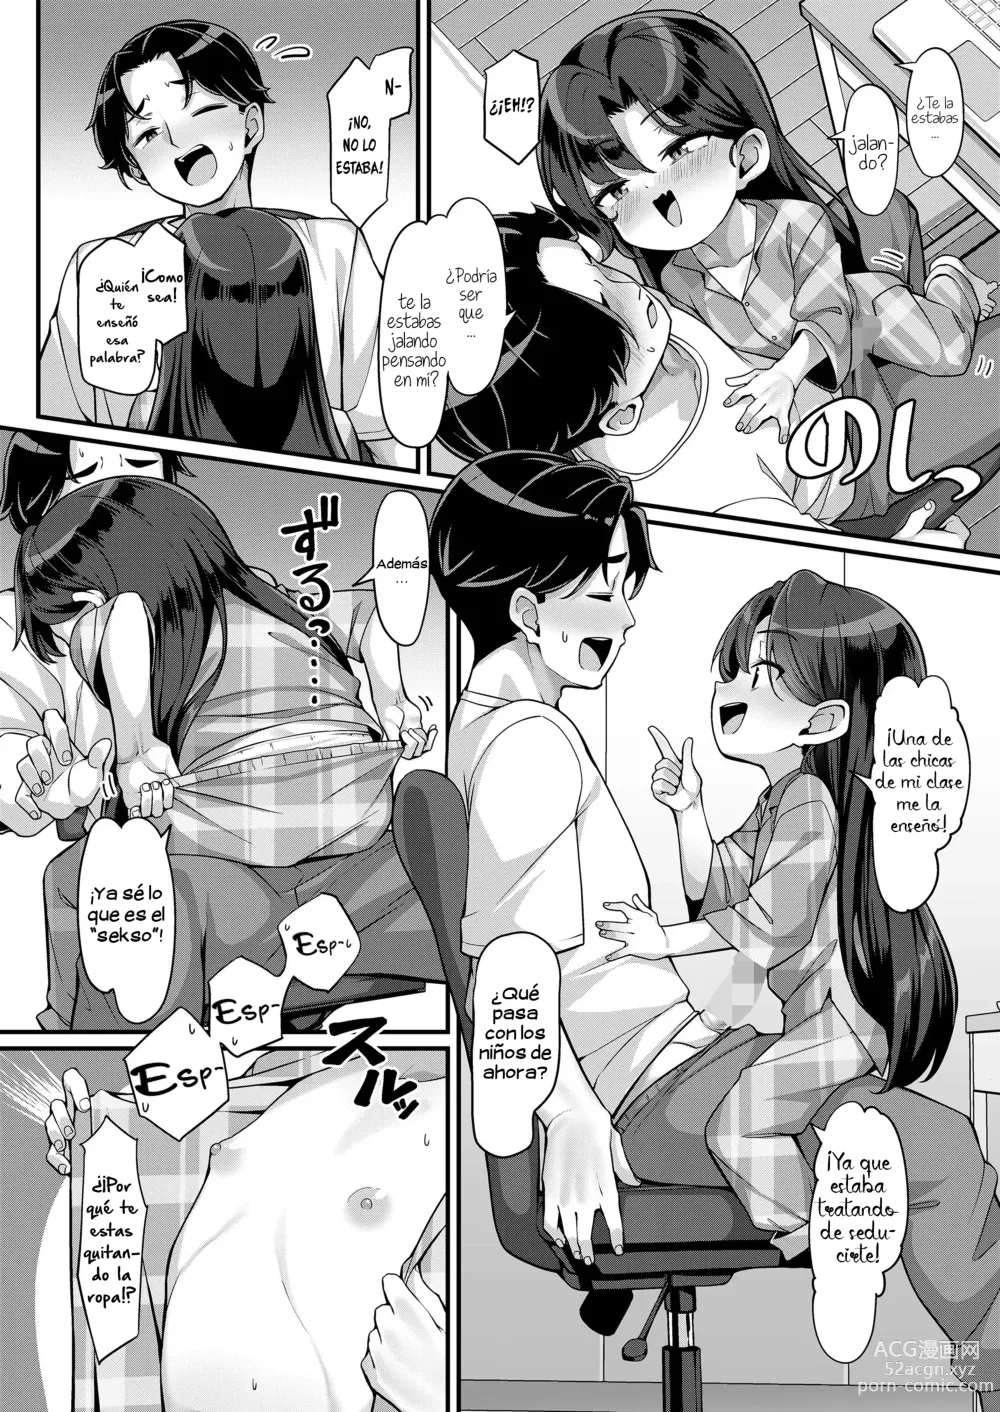 Page 6 of doujinshi La estrategía de seducción de Airi